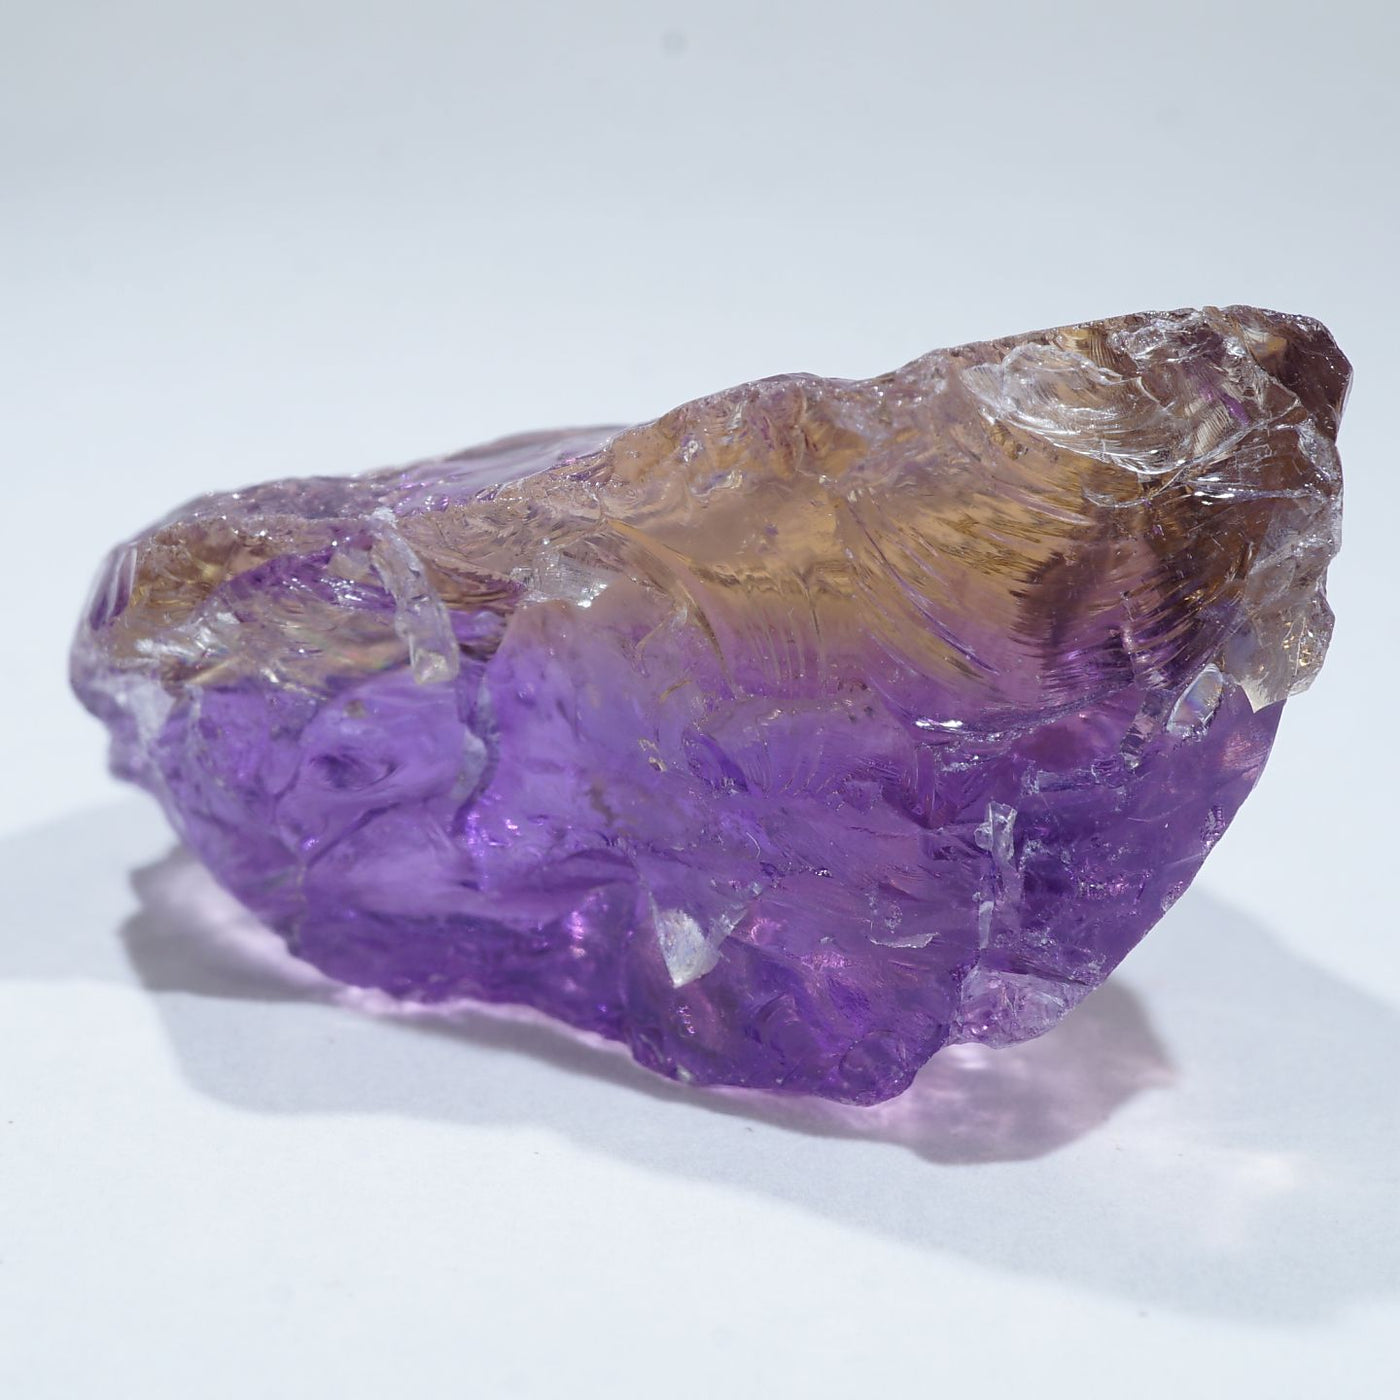 ボリビア産 アメトリン – 天然石ハッピーギフト